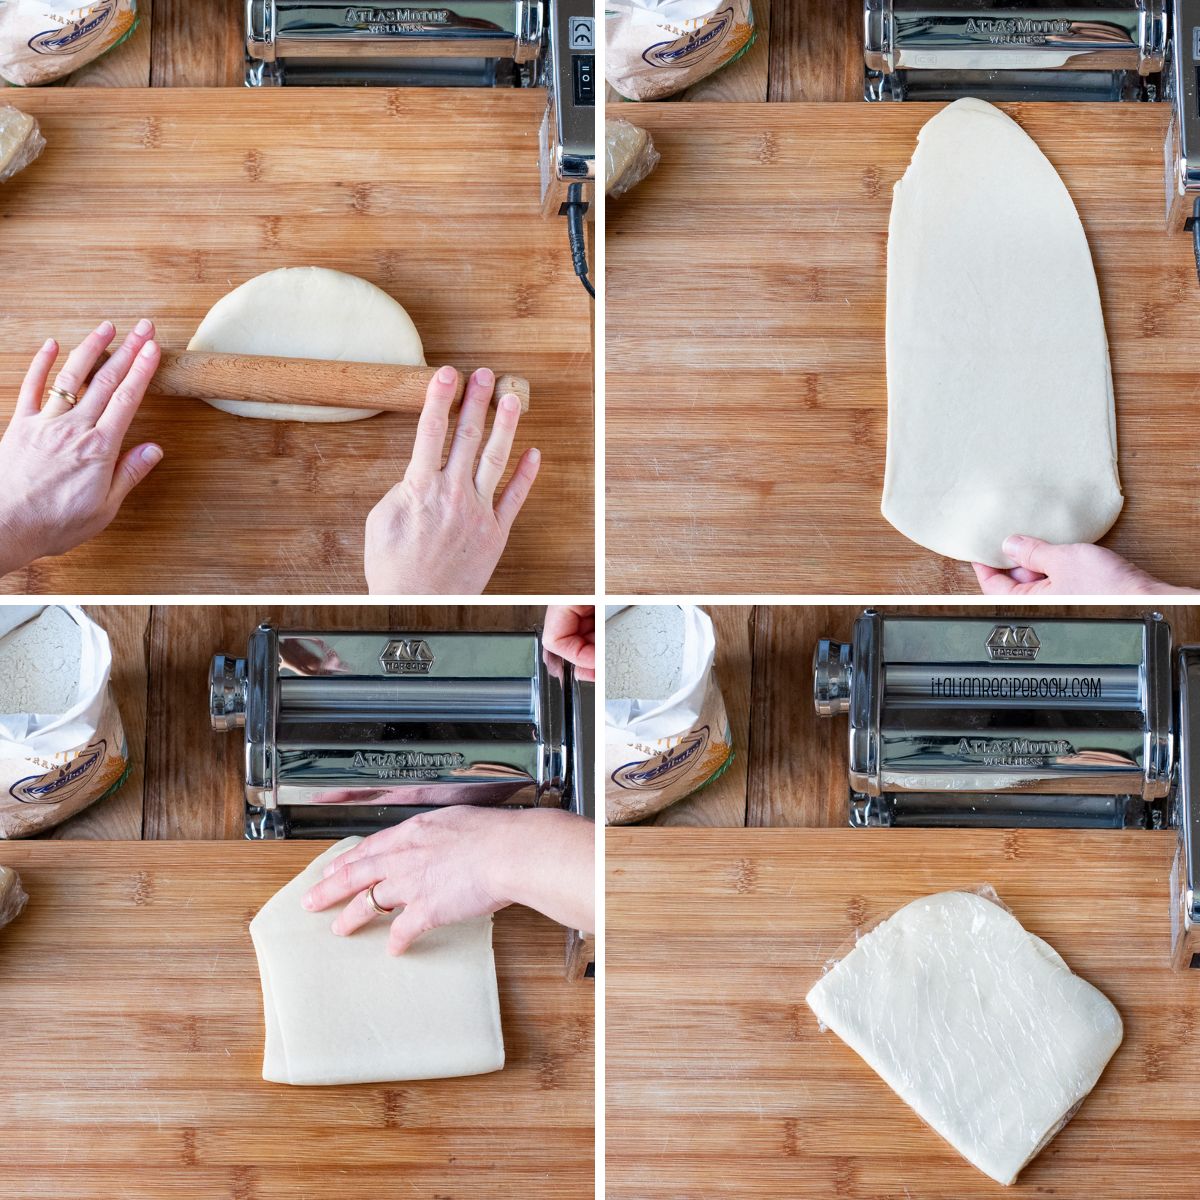 laminating cartellate dough using a pasta machine